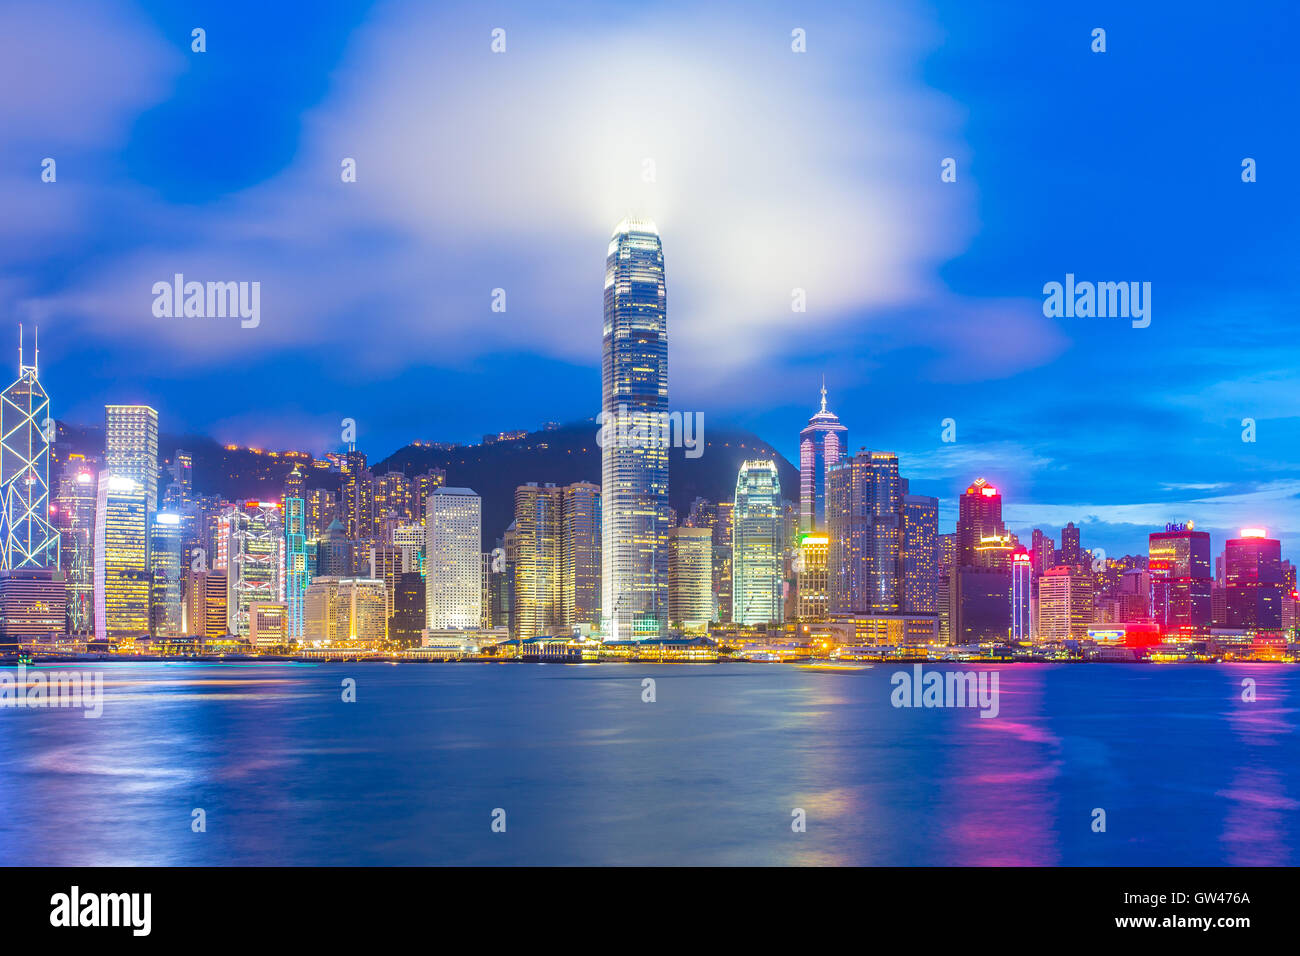 Hong Kong city skyline at night. Stock Photo